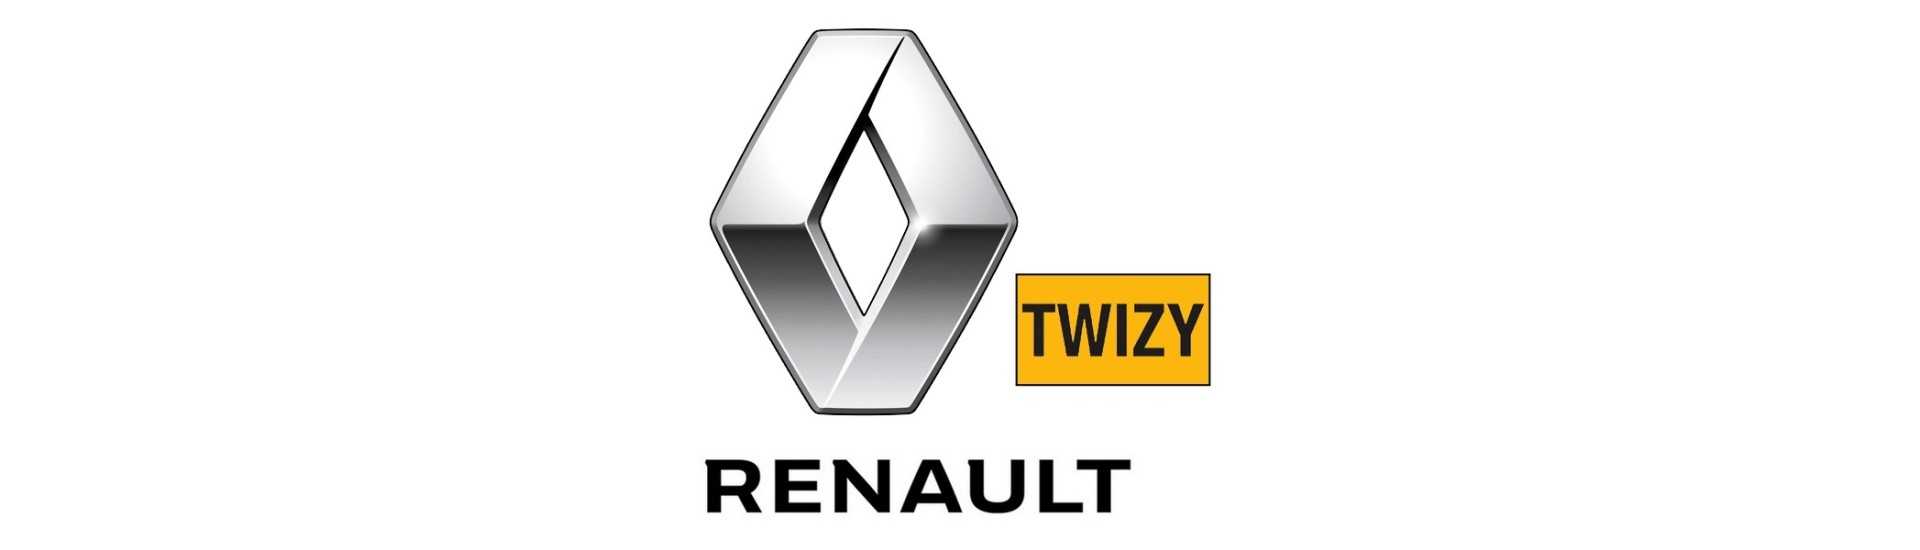 Relaţie / modul electronic pentru mașină fără permis Renault Twizy